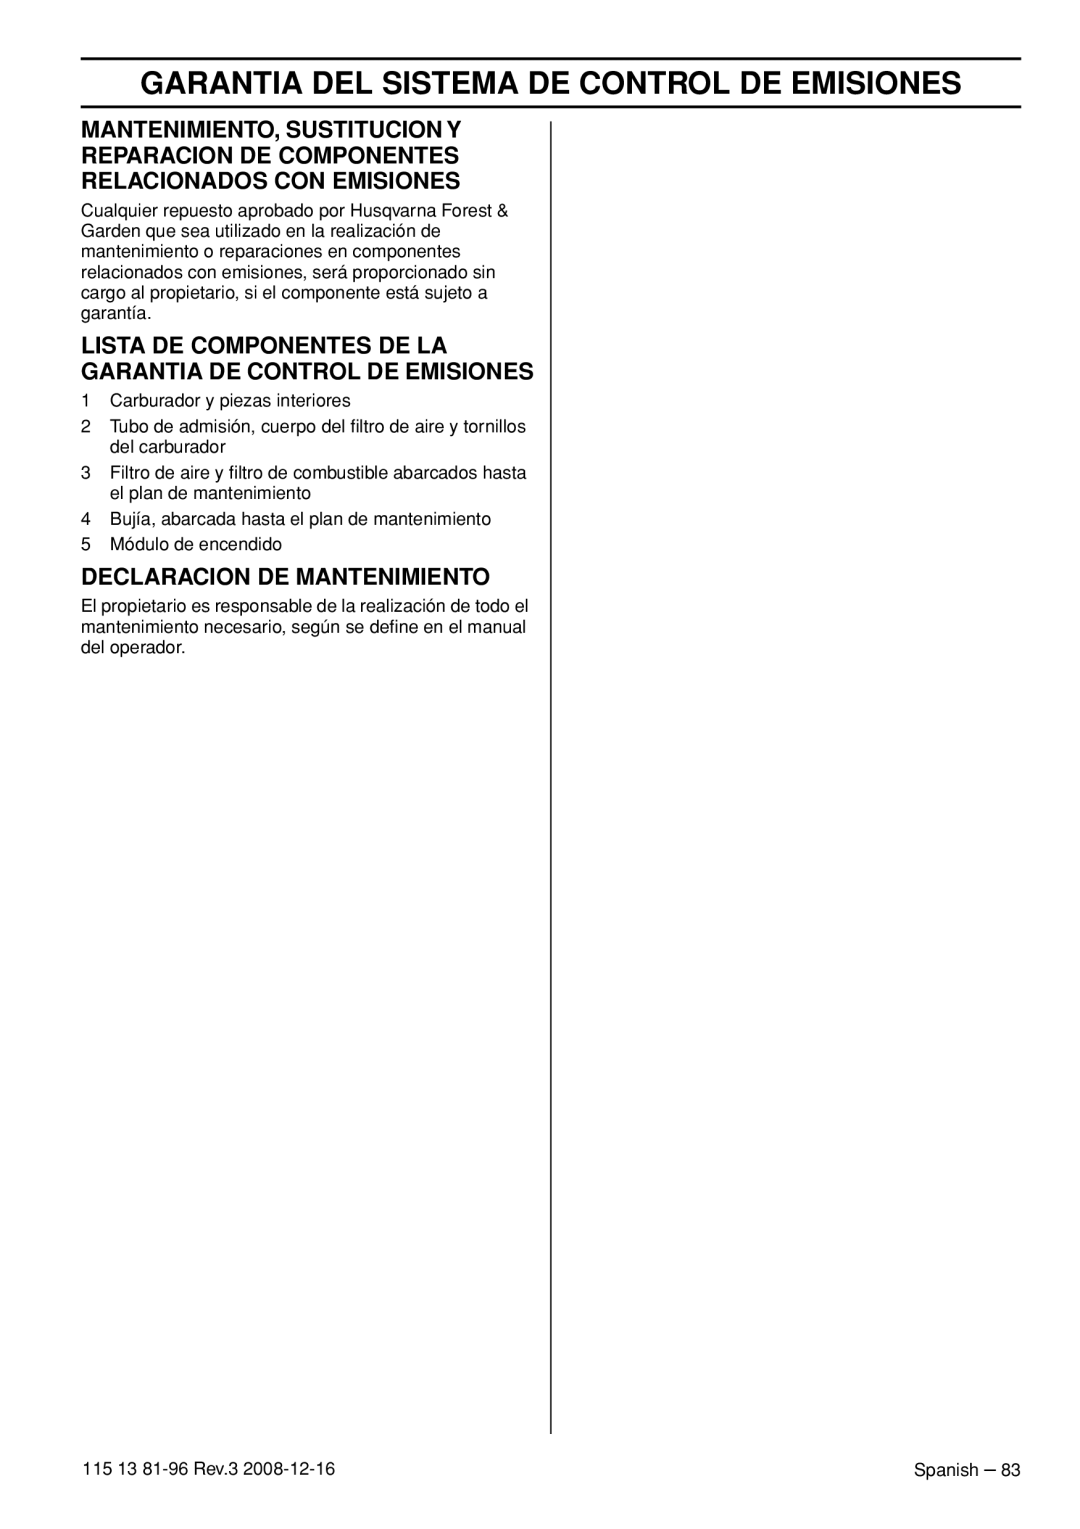 Husqvarna 115 13 81-96, 445e EPA III Mantenimiento, Sustitucion Y Reparacion De Componentes, Relacionados Con Emisiones 